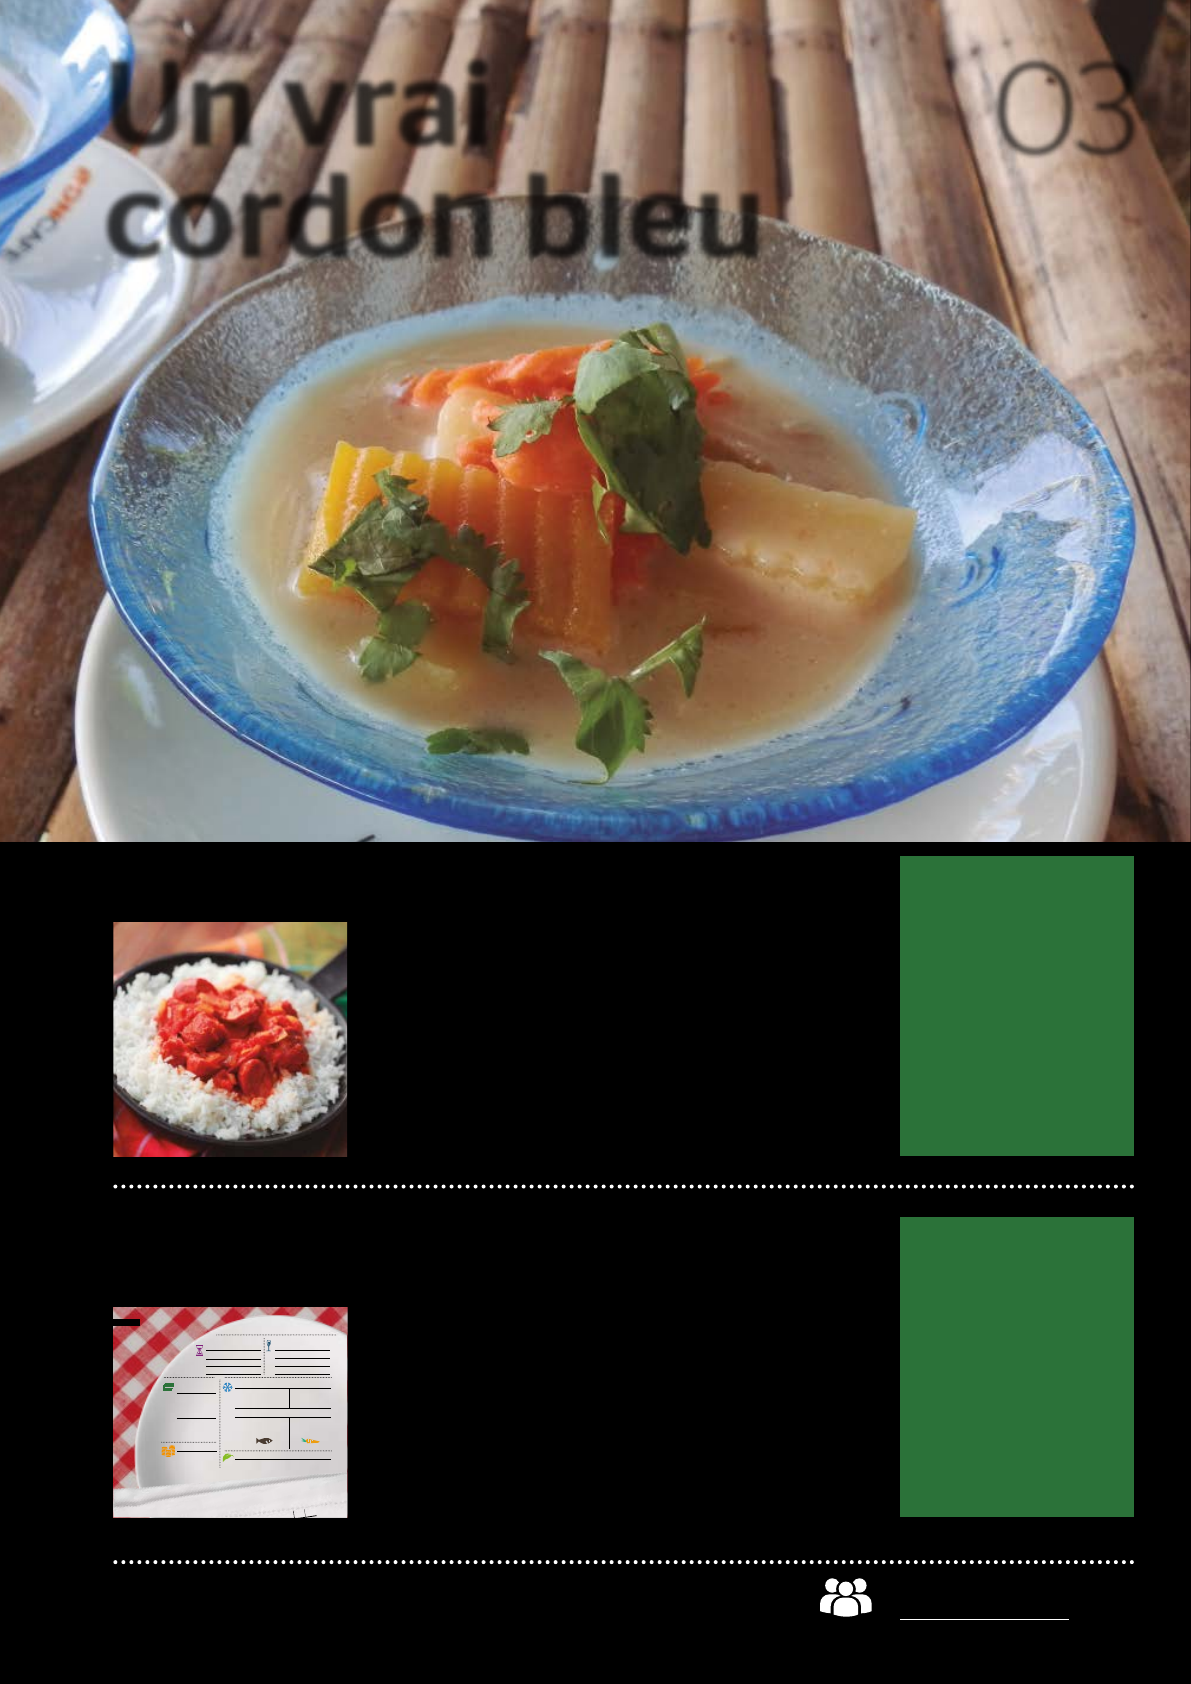 alimentation et cuisine > cuisine > couvert > fourchette image -  Dictionnaire Visuel